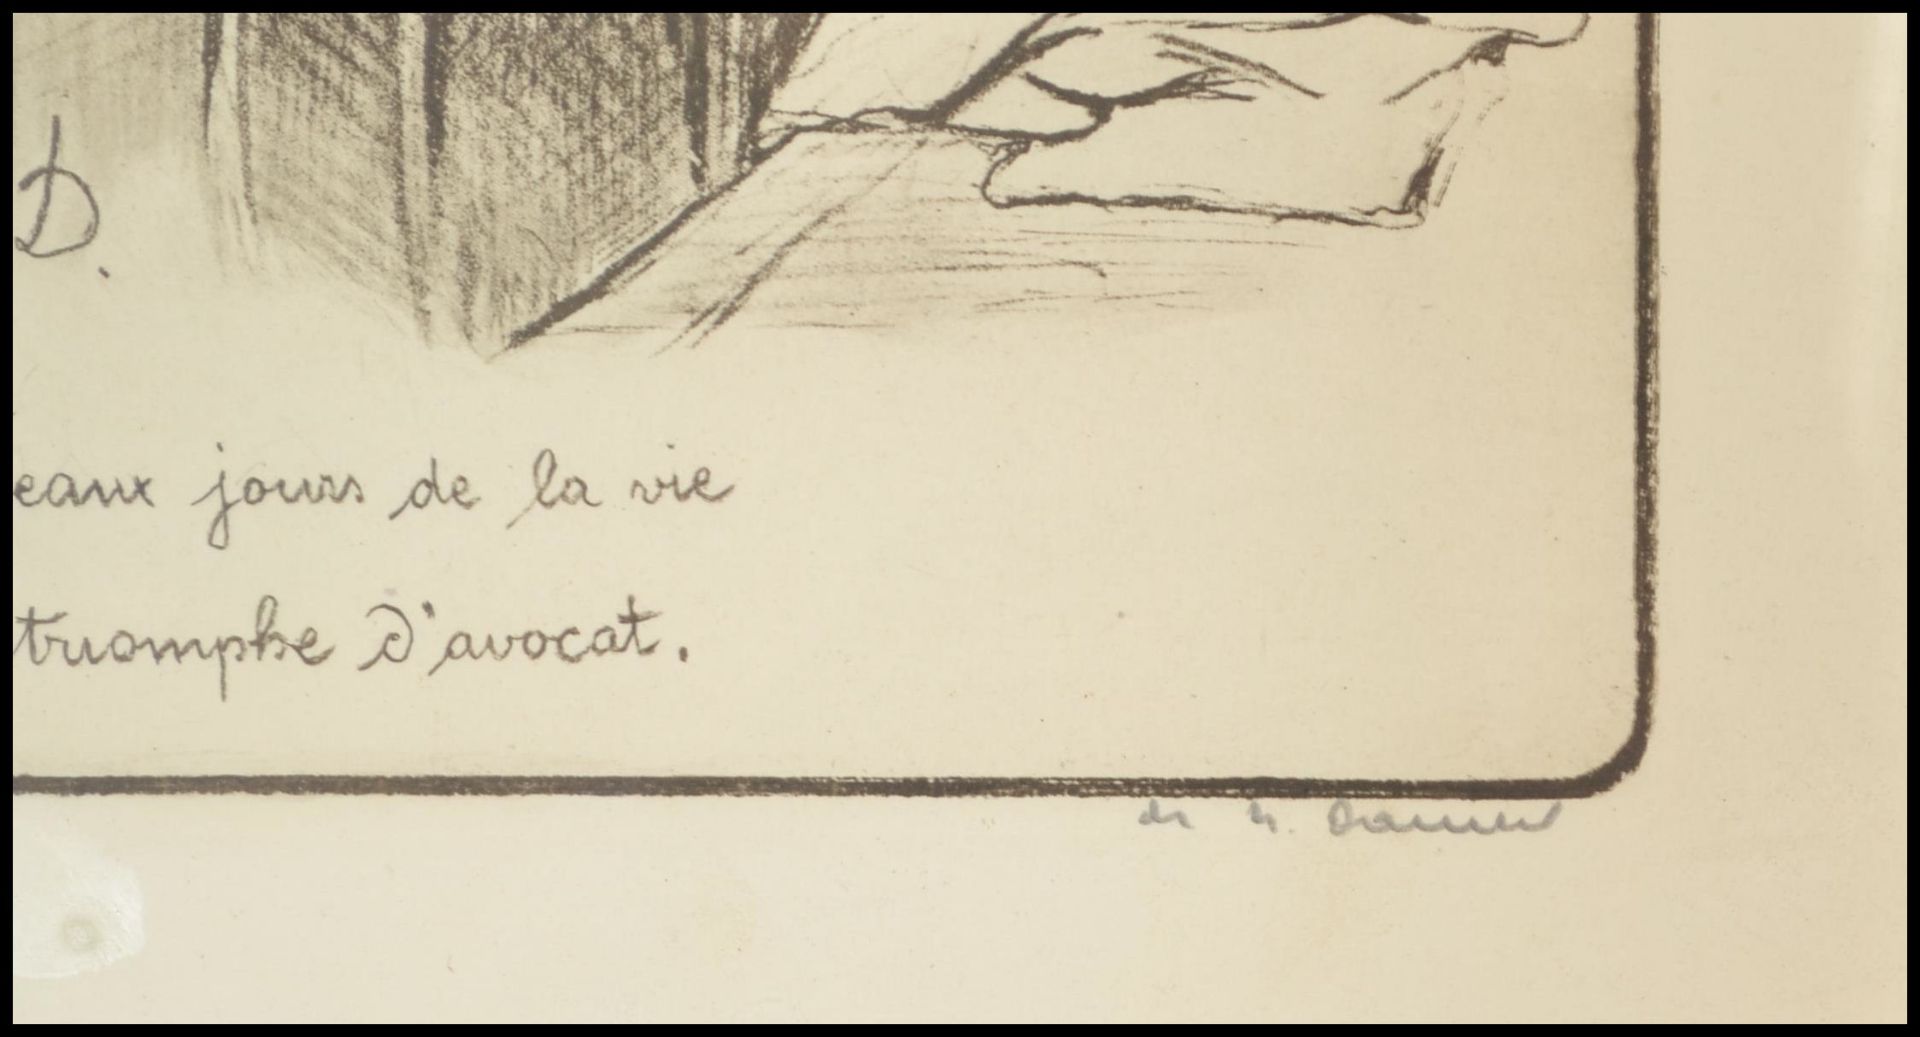 Honoré Daumier (French, 1808-1879)  A limited edition print no 8 of 500 of Les Beaux jours de la vie - Bild 3 aus 3